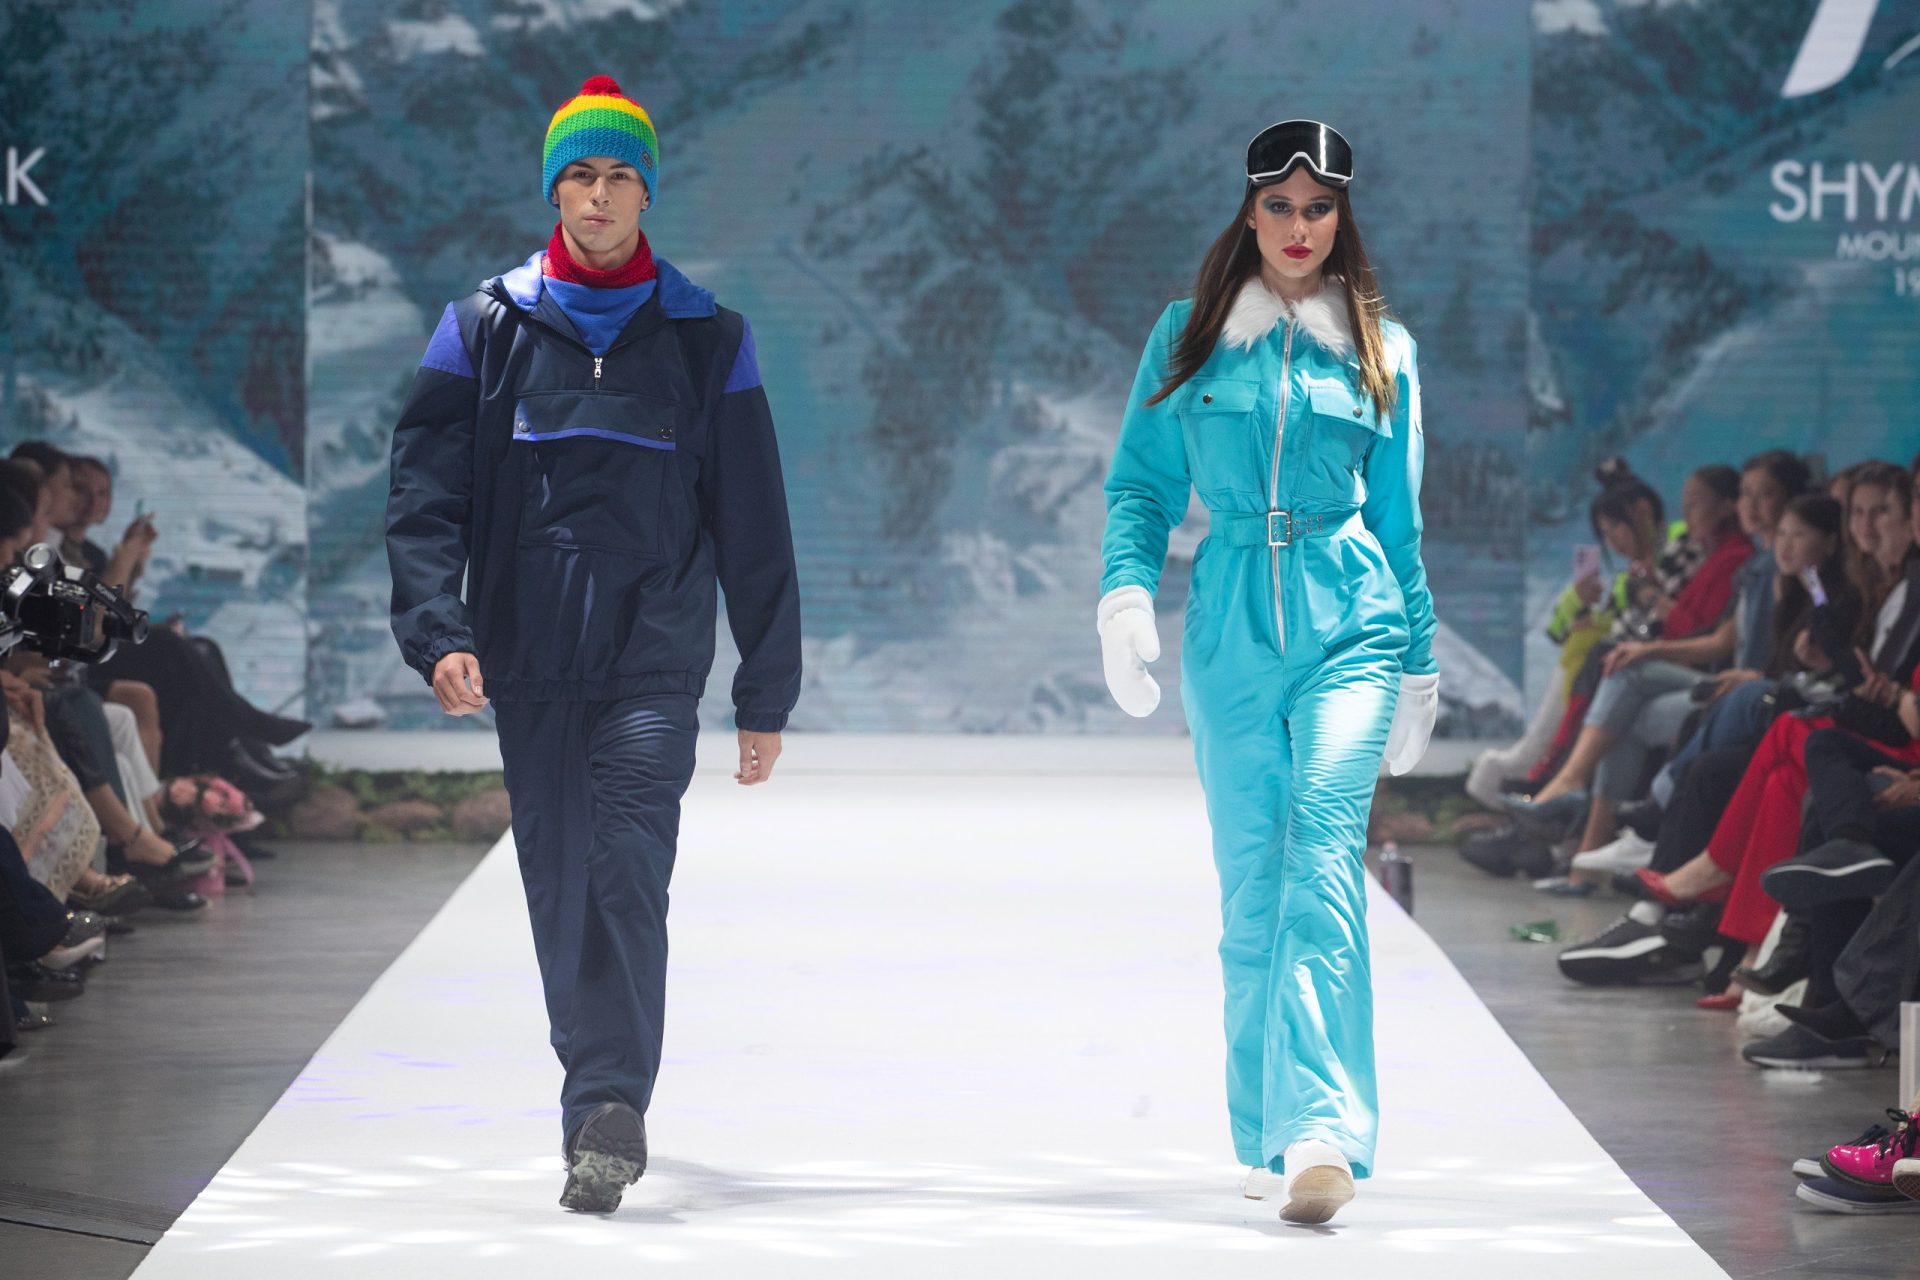 Eurasian Fashion Week: ретроспектива горнолыжных костюмов, наряды для светских раутов и финал конкурса молодых дизайнеров